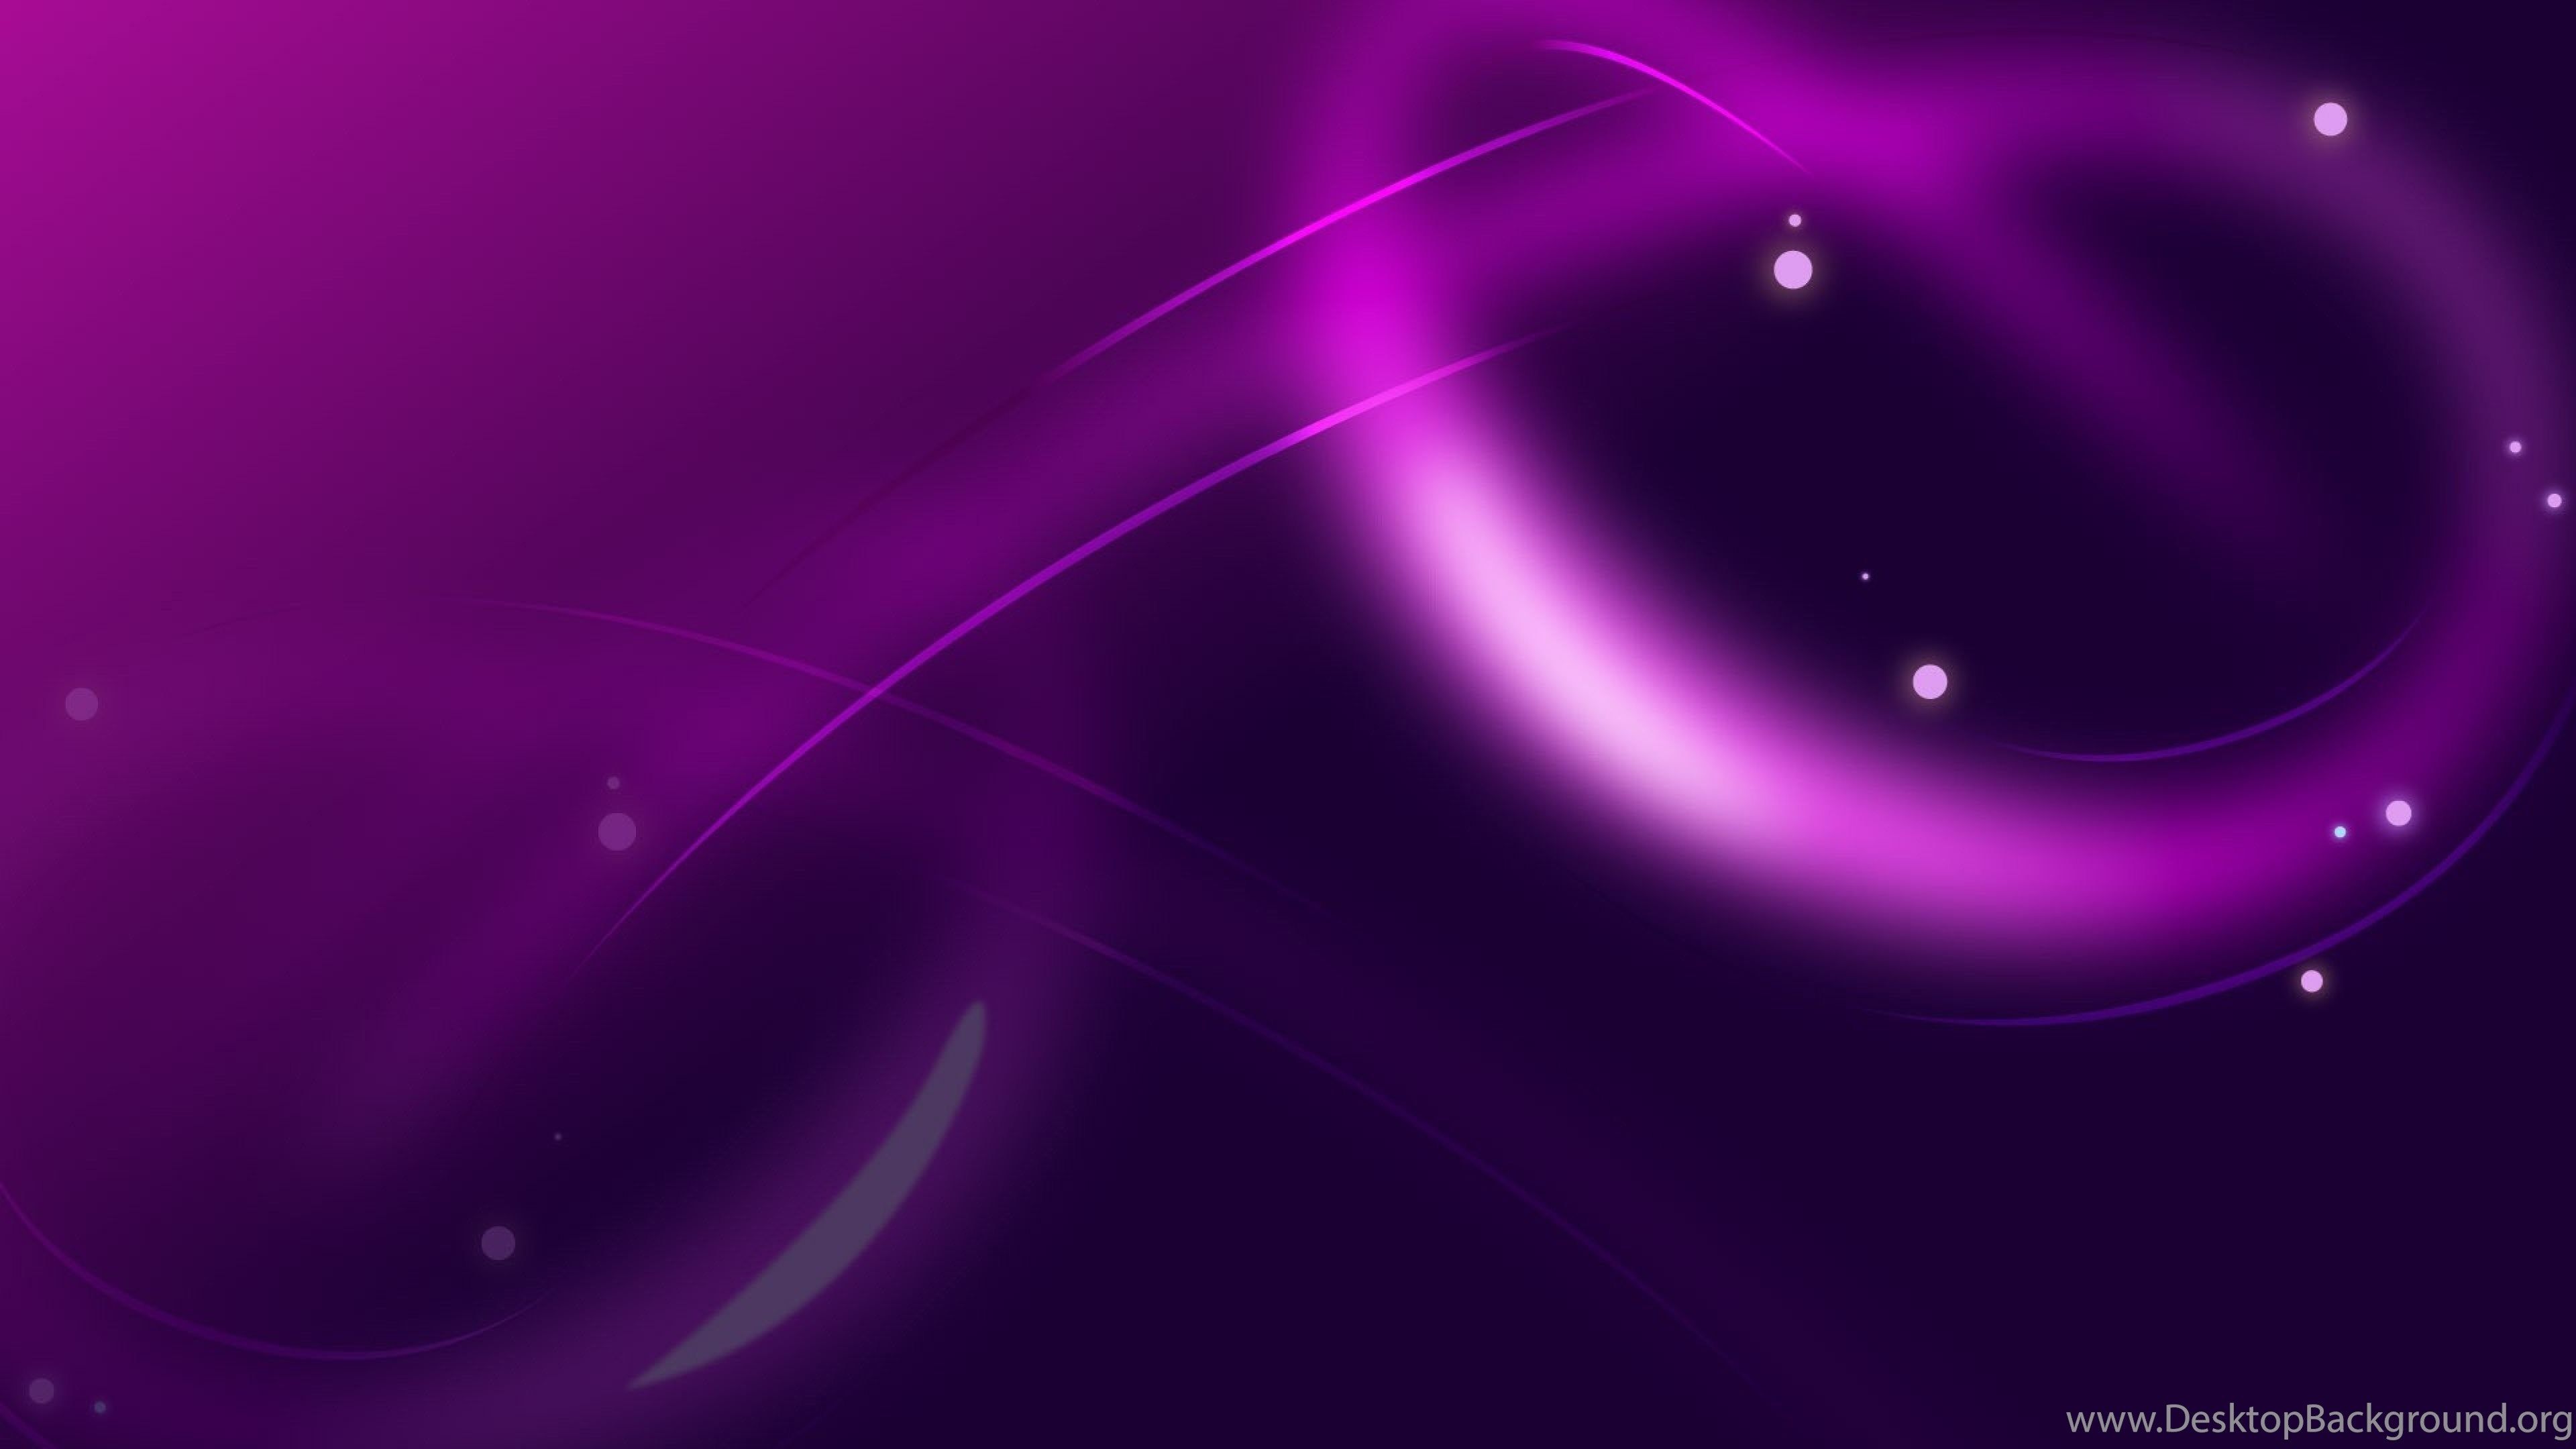 Download Wallpaper 3840x2160 Oval, Shape, Light, Violet, Shades 4K. Desktop Background